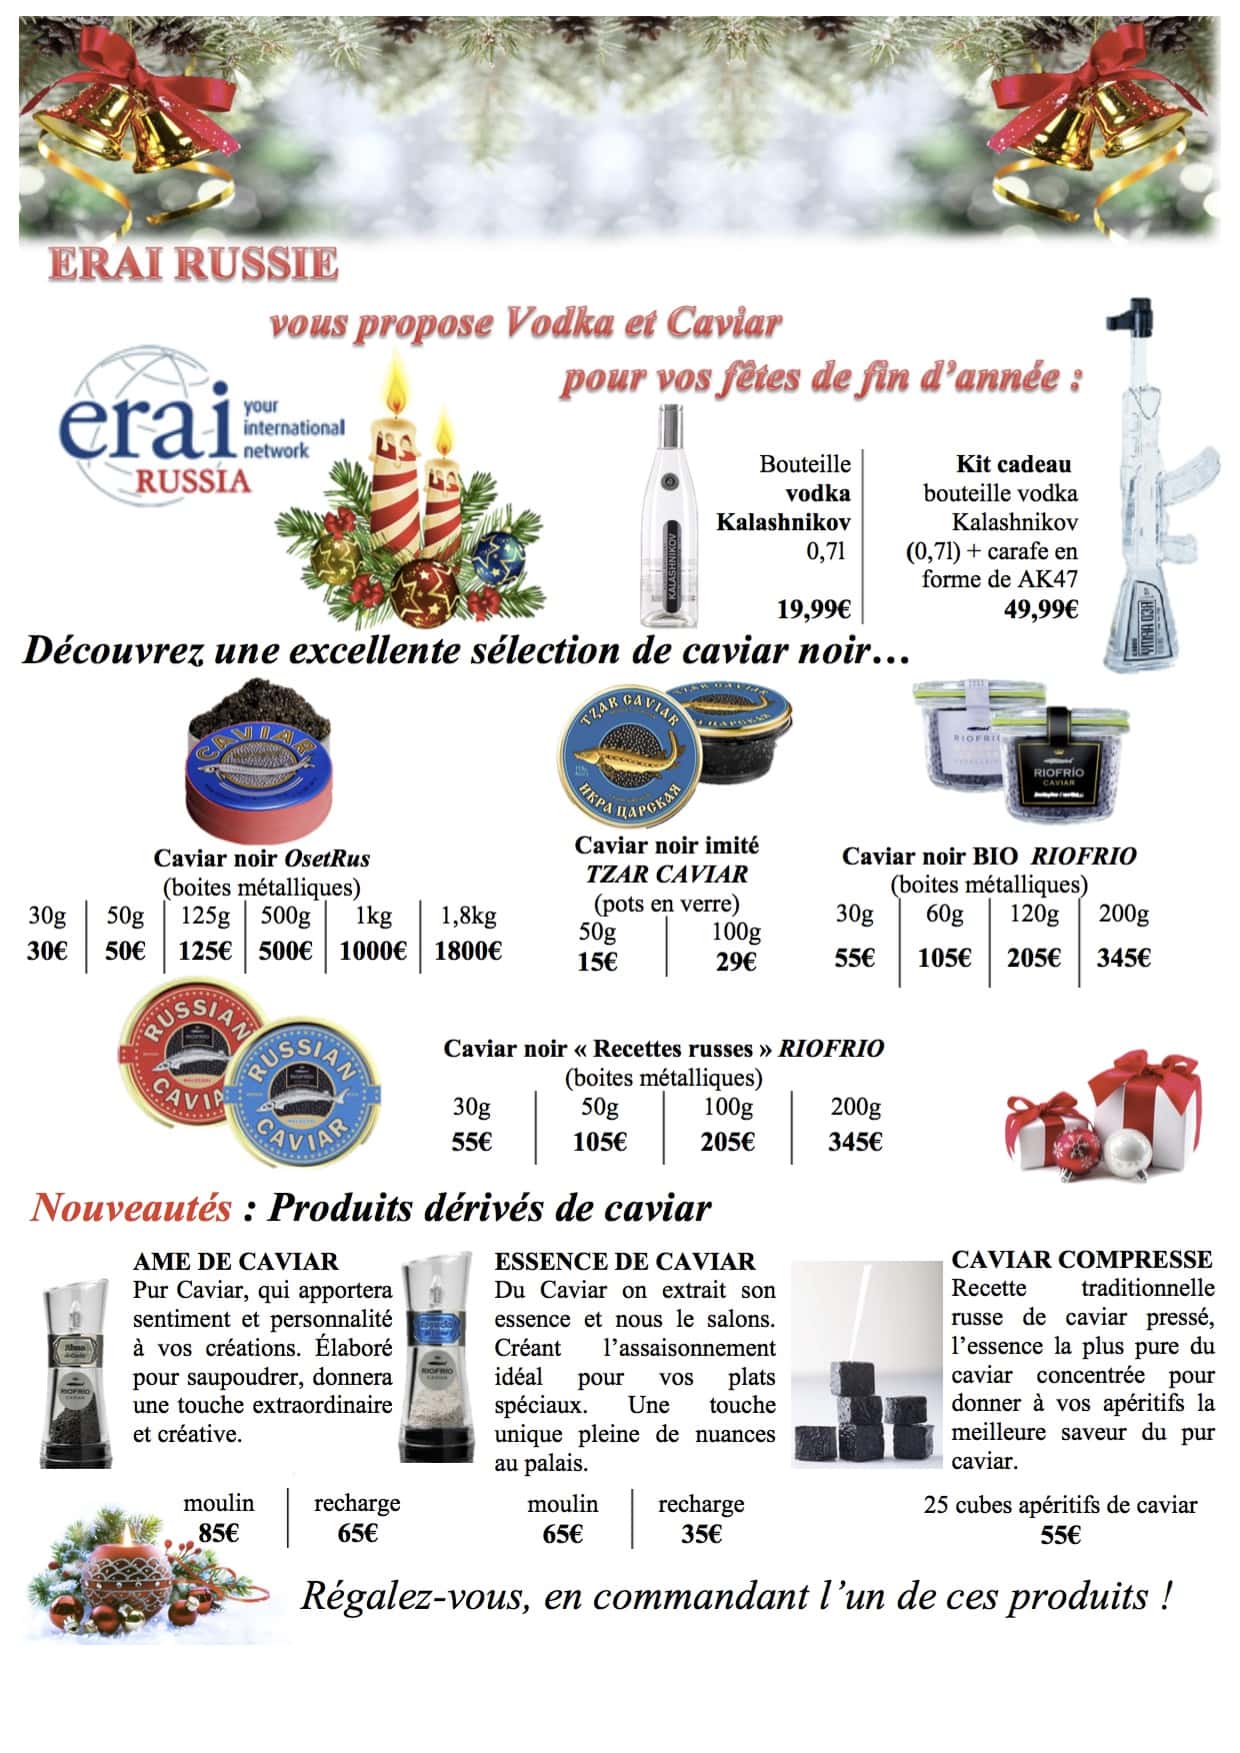 Caviar et vodka : « Erai Monde » approche maladroitement l’économie régionale